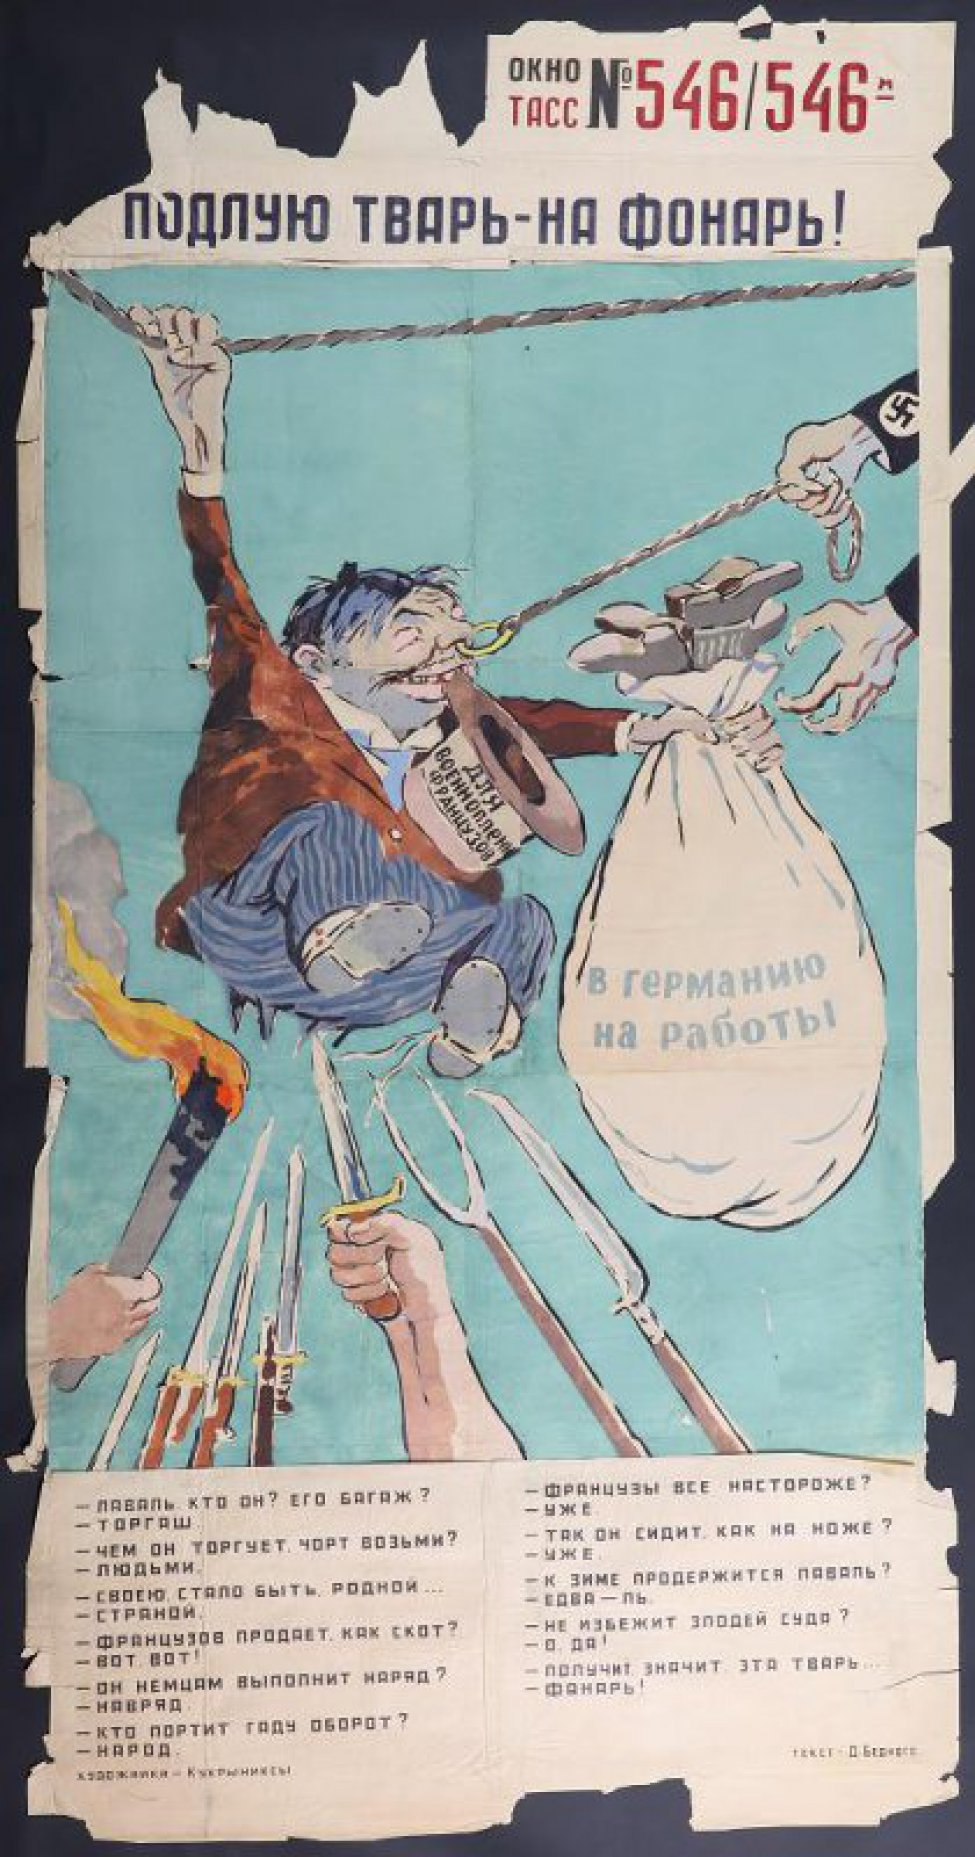 Изображен Лаваль, поднятый на штыки, веревкой за нос его тянет рука фашиста, текст Д.Бедного:" Лаваль, кто он? Его багаж?- торгаш..."